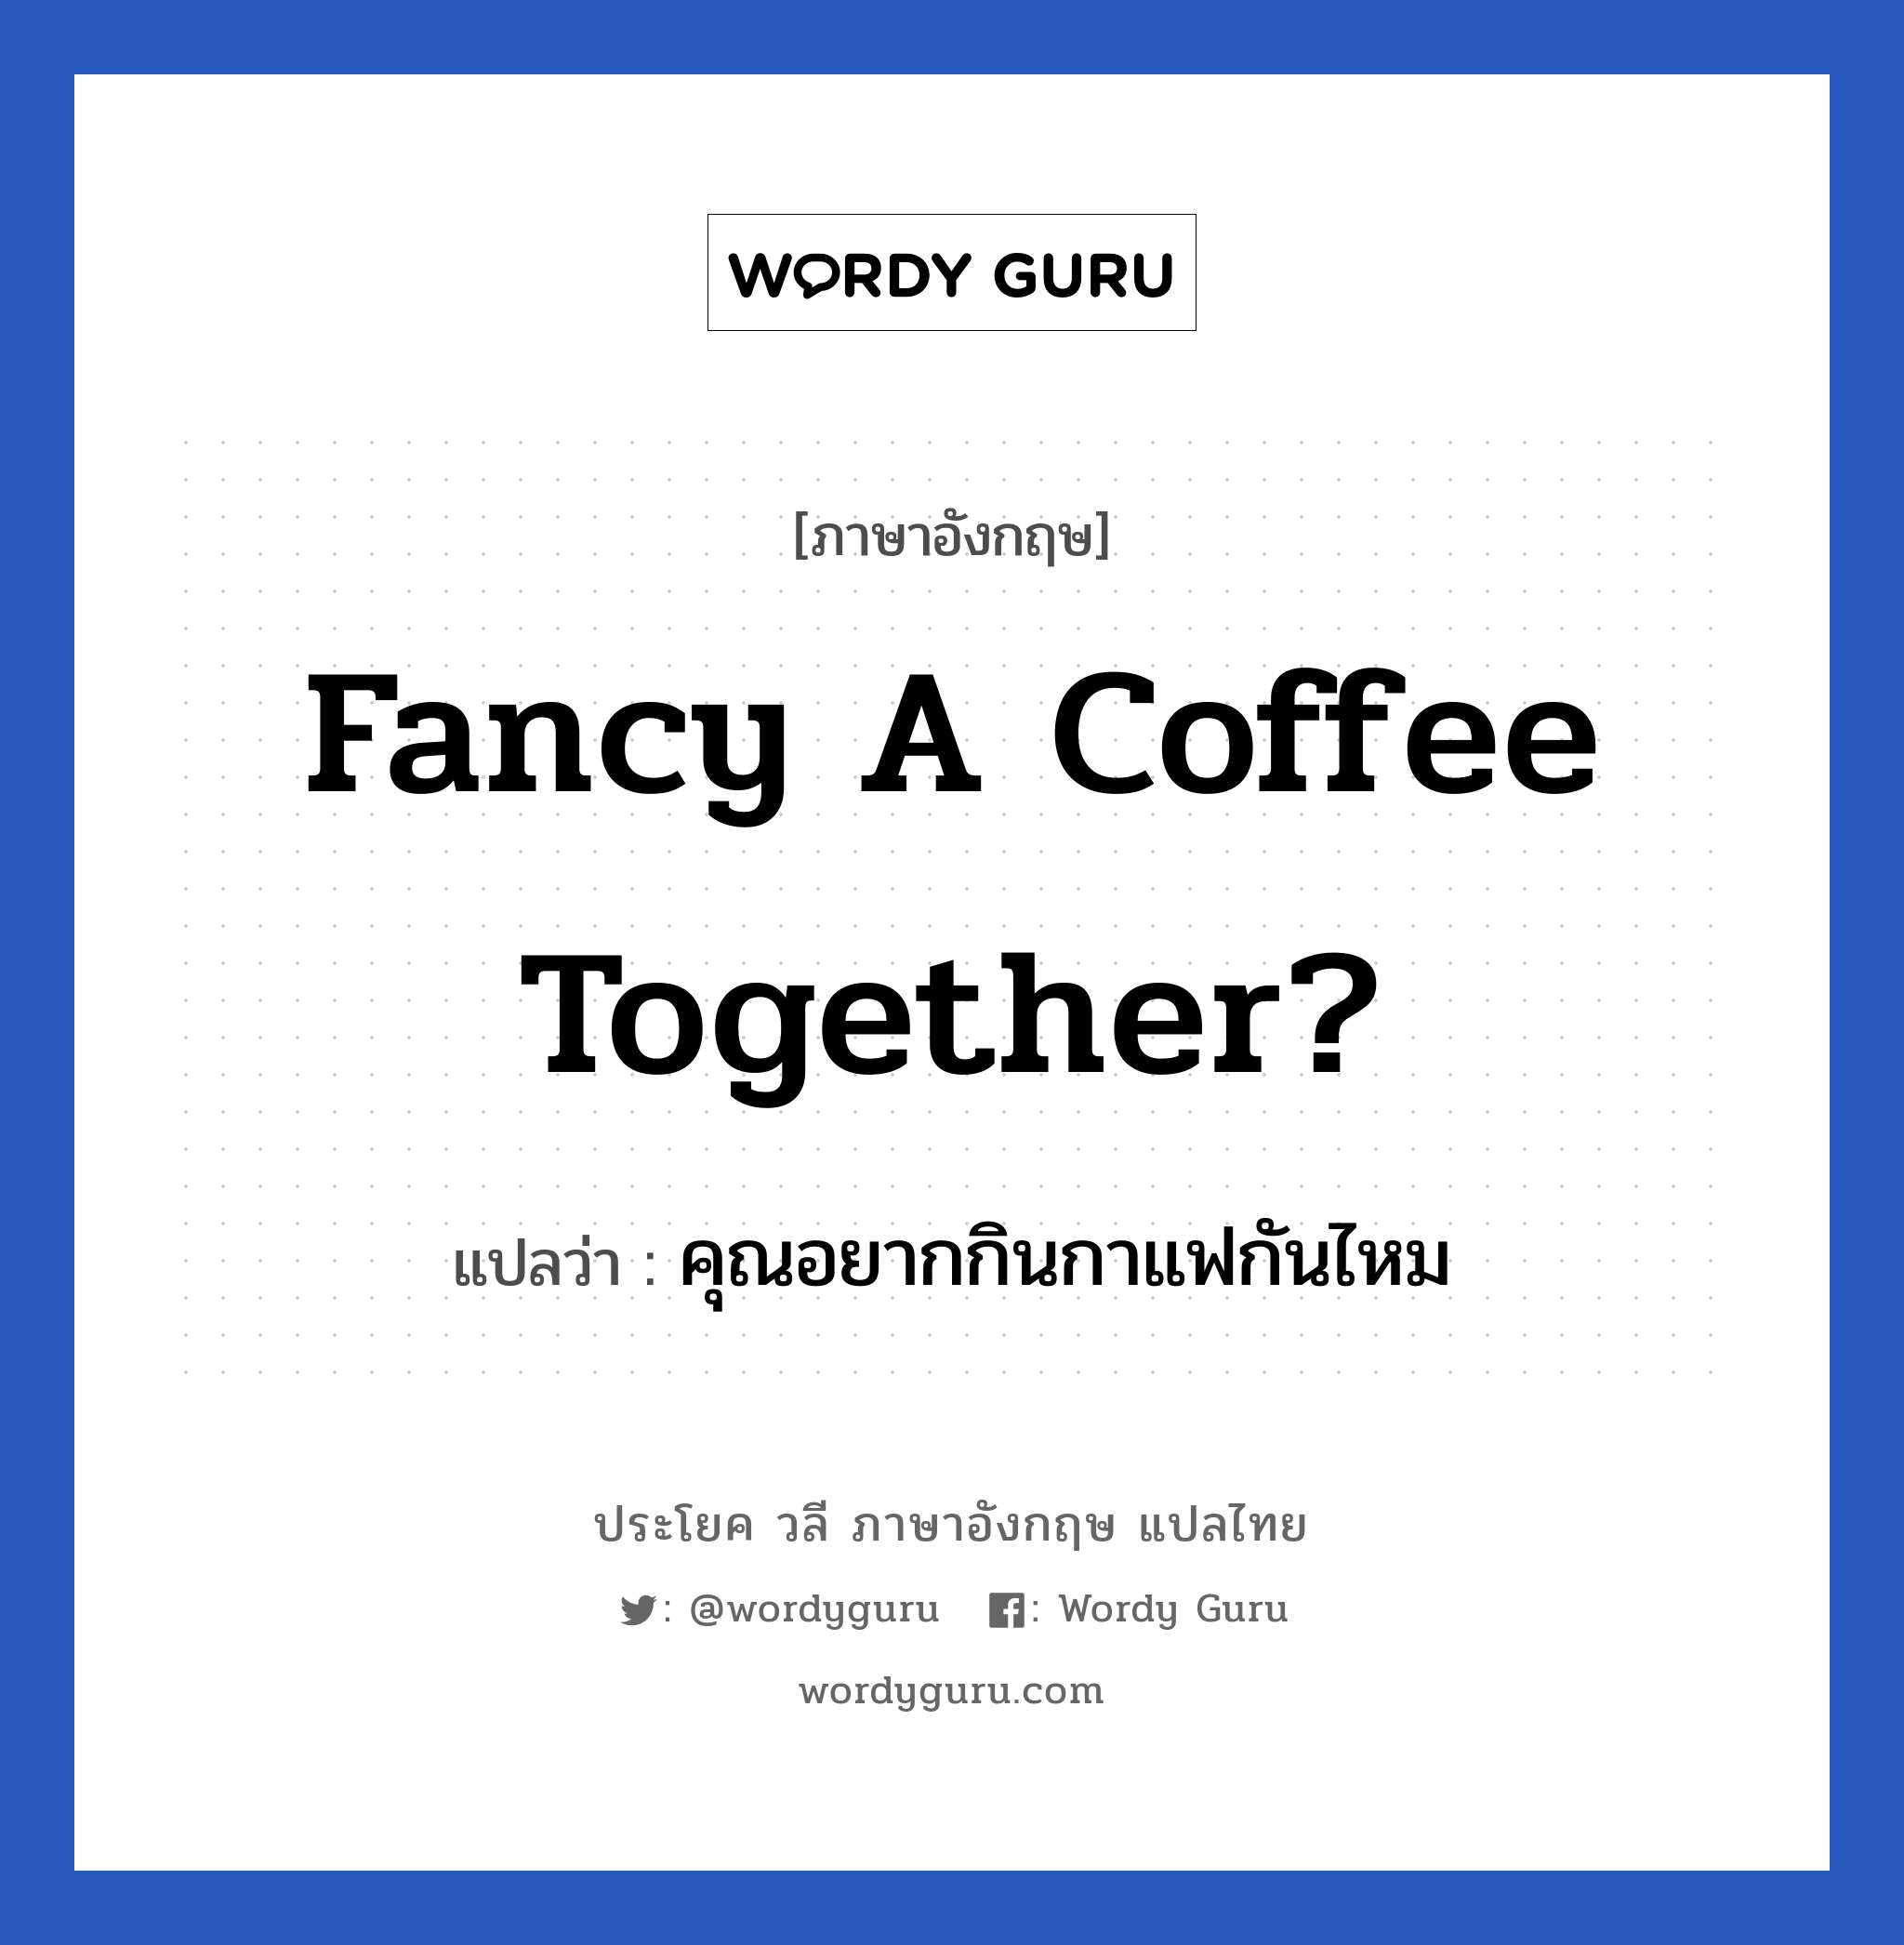 Fancy a coffee together? แปลว่า?, วลีภาษาอังกฤษ Fancy a coffee together? แปลว่า คุณอยากกินกาแฟกันไหม